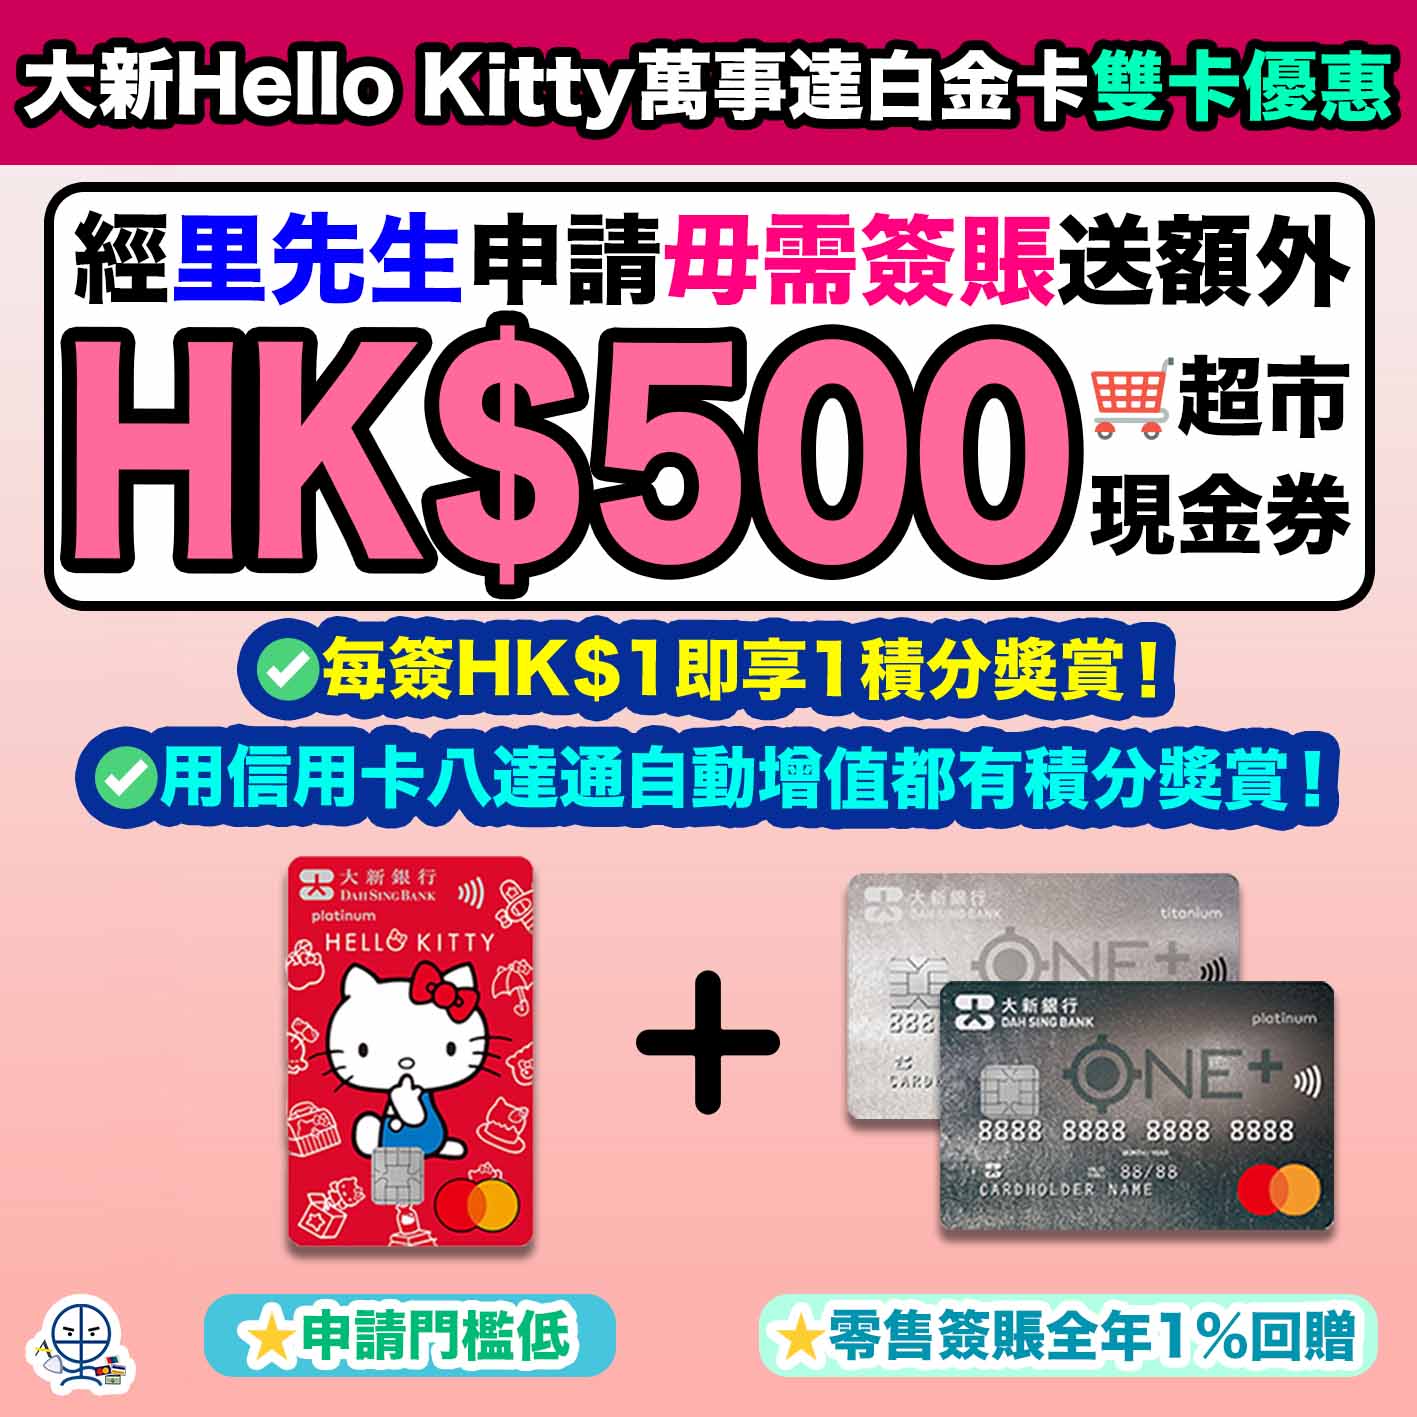 大新銀行-dah sing bank-大新Hello Kitty萬事達白金卡-信用卡迎新優惠-八達通自動增值-積分獎賞